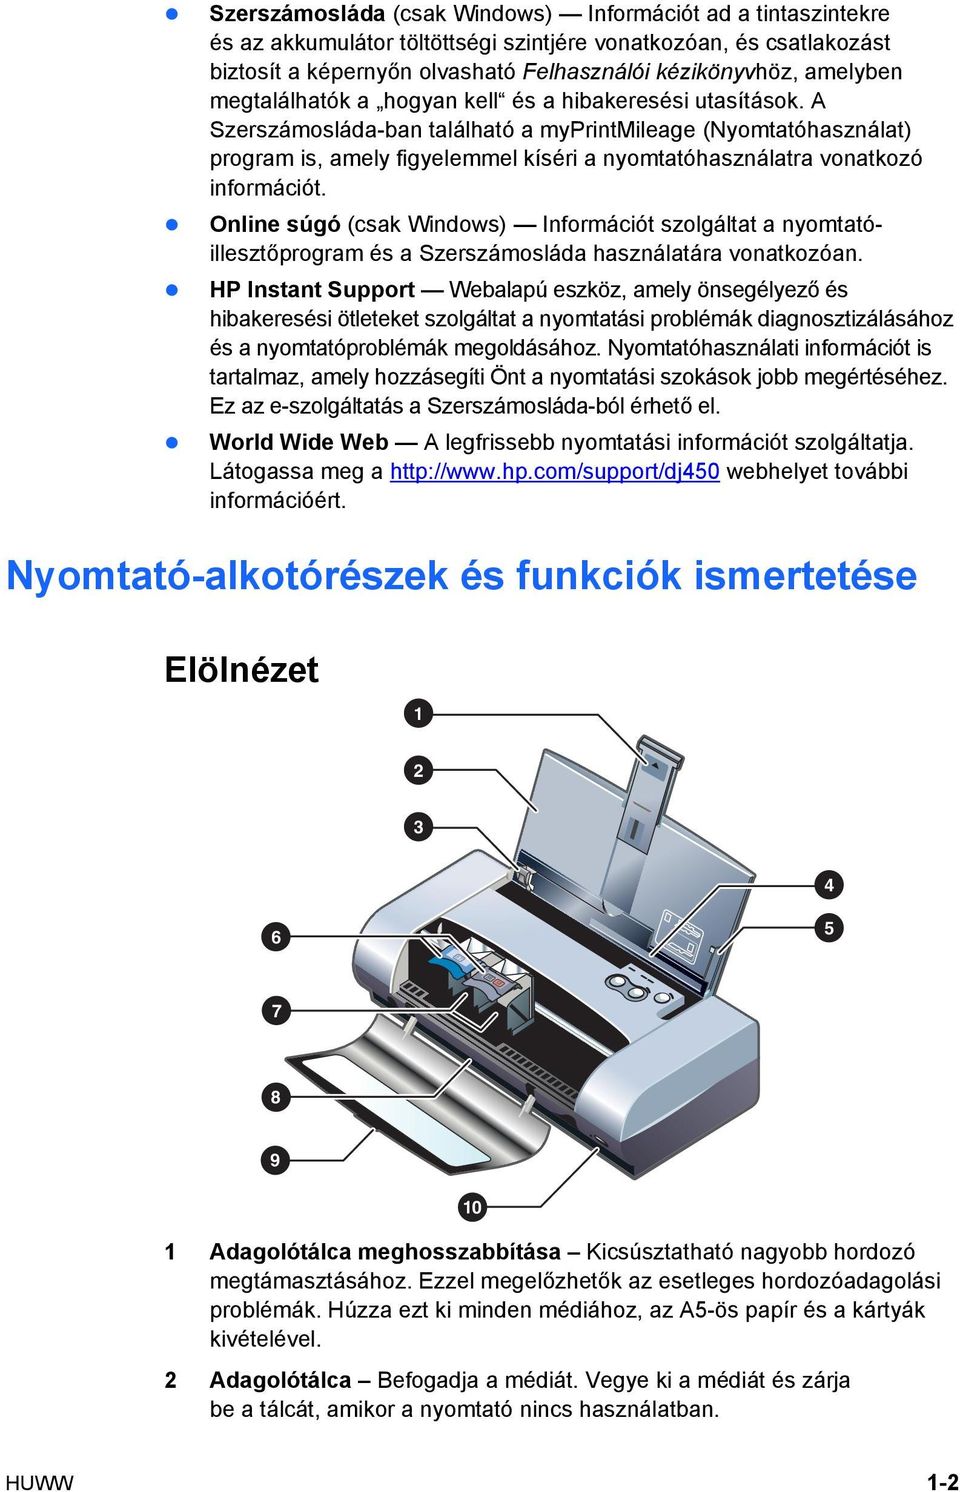 A Szerszámosláda-ban található a myprintmileage (Nyomtatóhasználat) program is, amely figyelemmel kíséri a nyomtatóhasználatra vonatkozó információt.